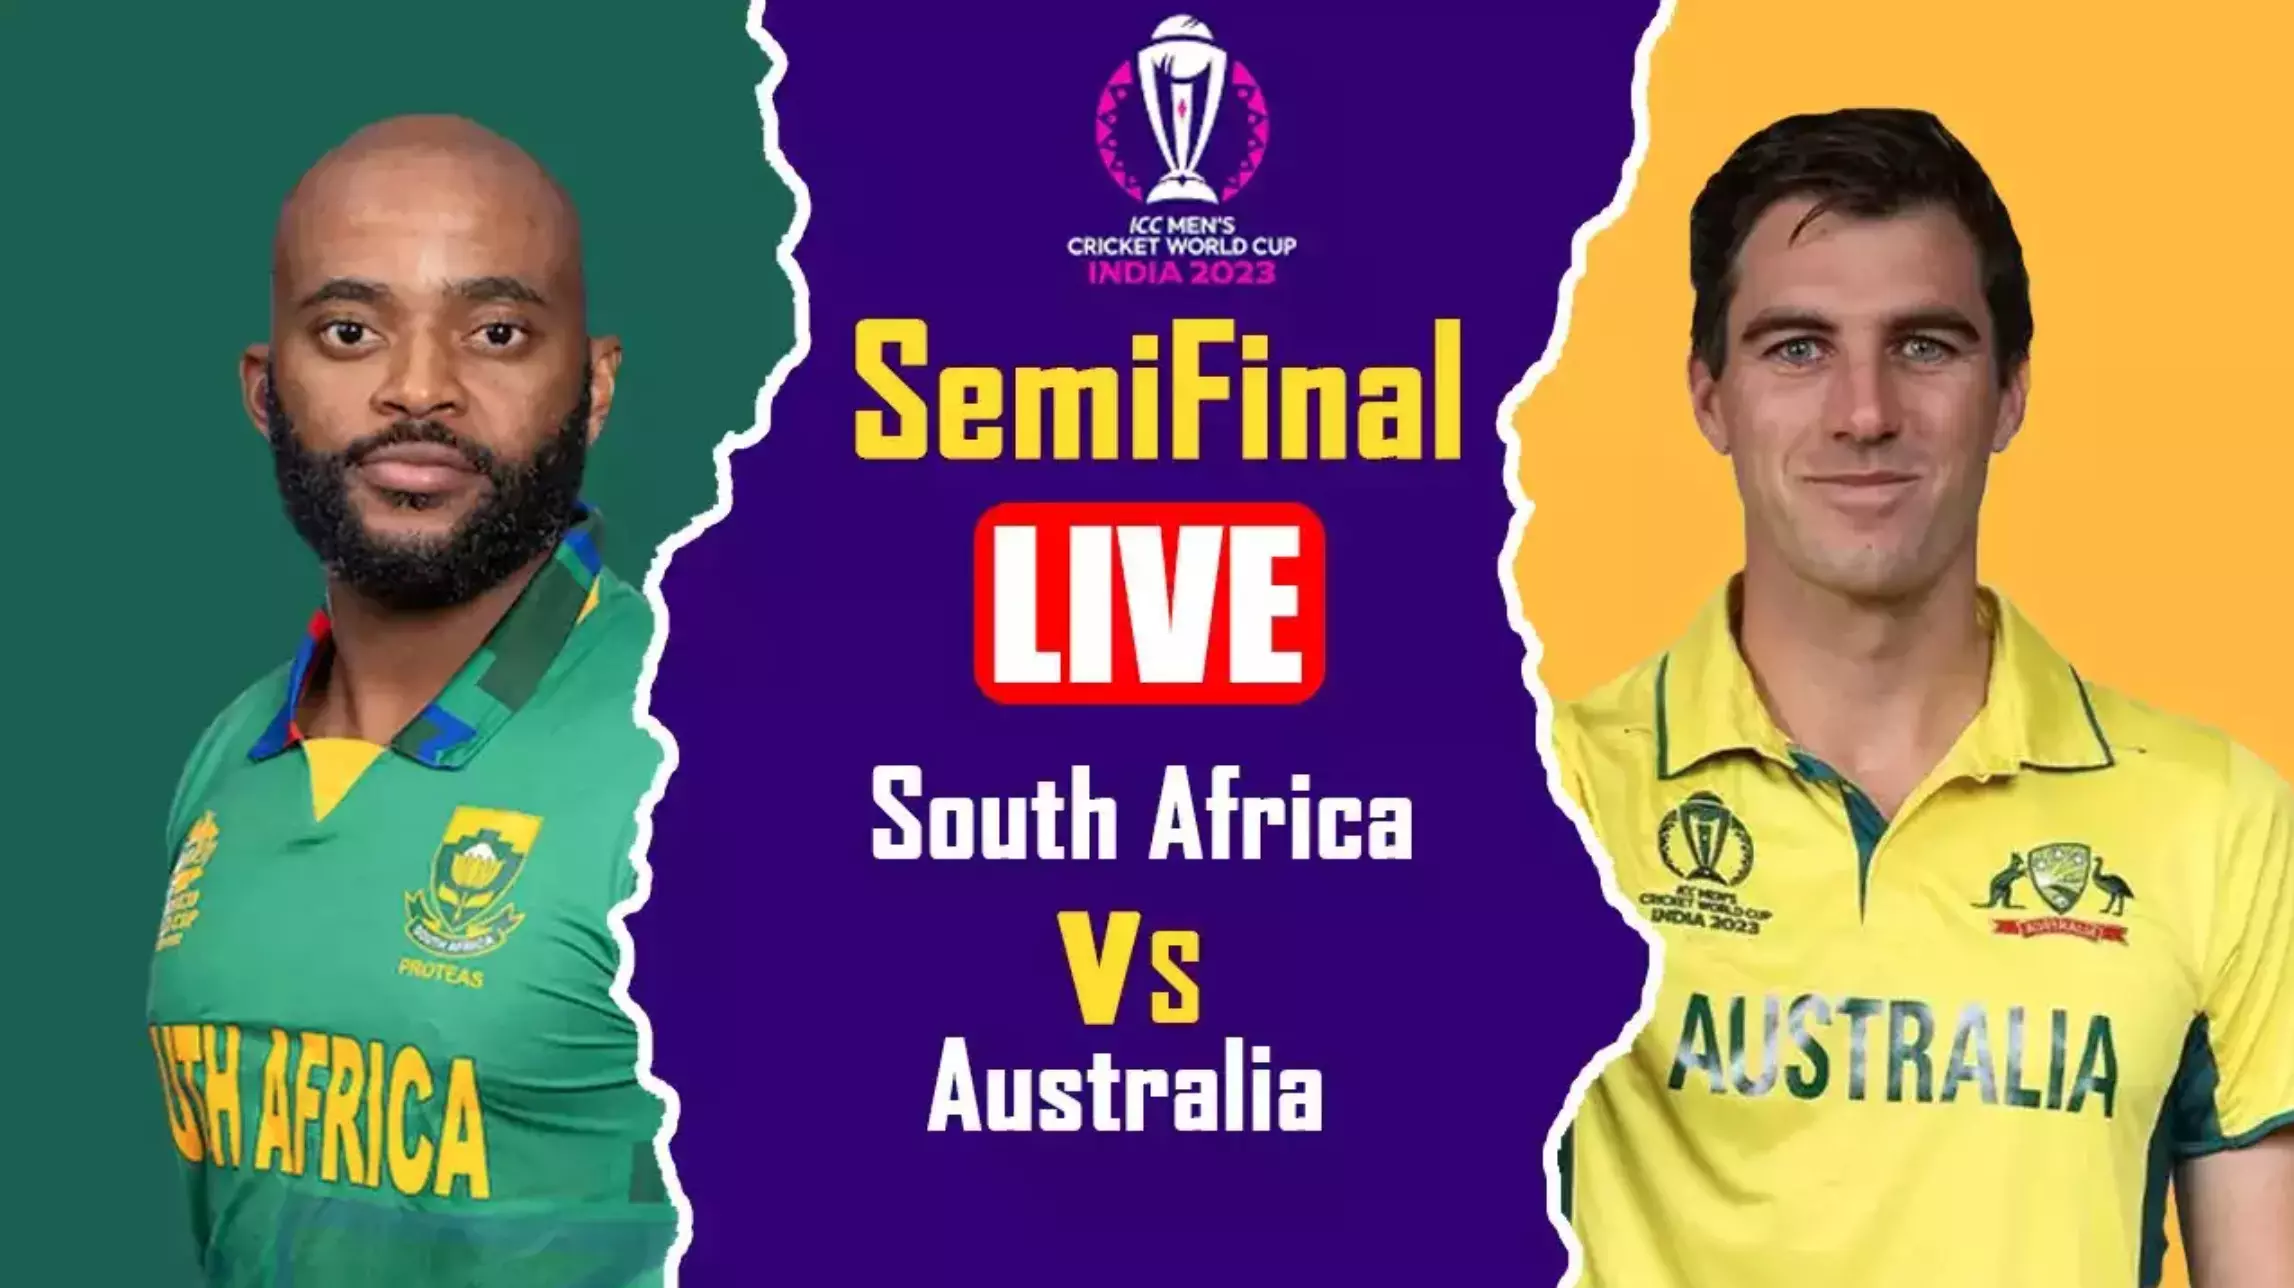 AUS vs SA World Cup Semi Final Live : दक्षिण अफ्रीका ने ऑस्ट्रेलिया के खिलाफ टॉस जीतकर बल्लेबाजी का फैसला लिया